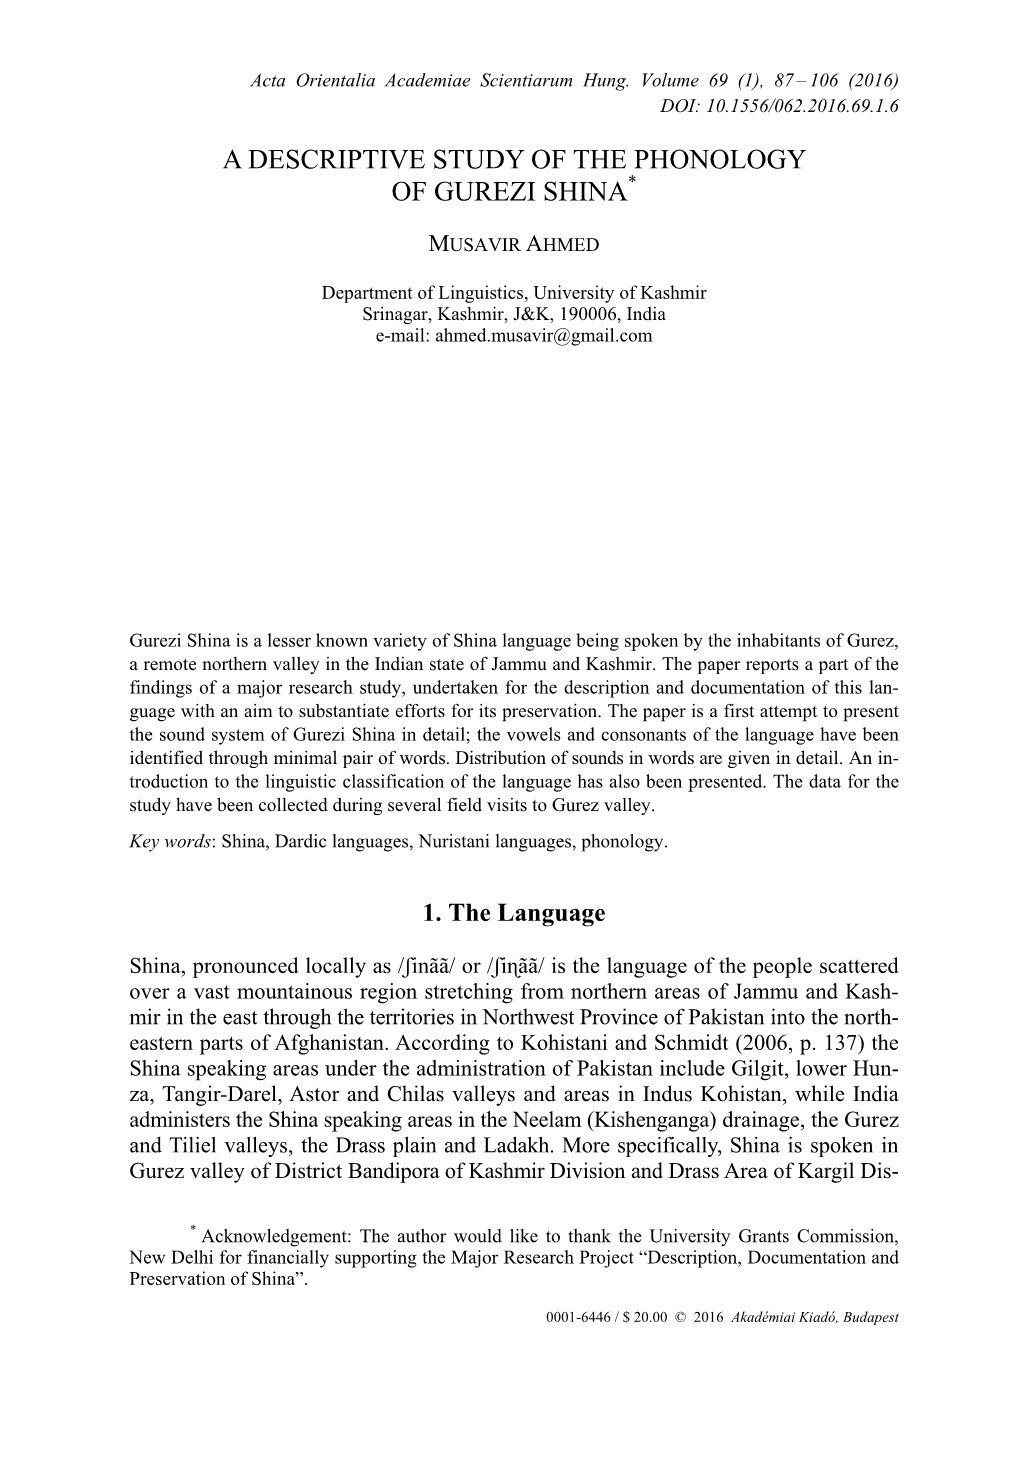 A Descriptive Study of the Phonology of Gurezi Shina*